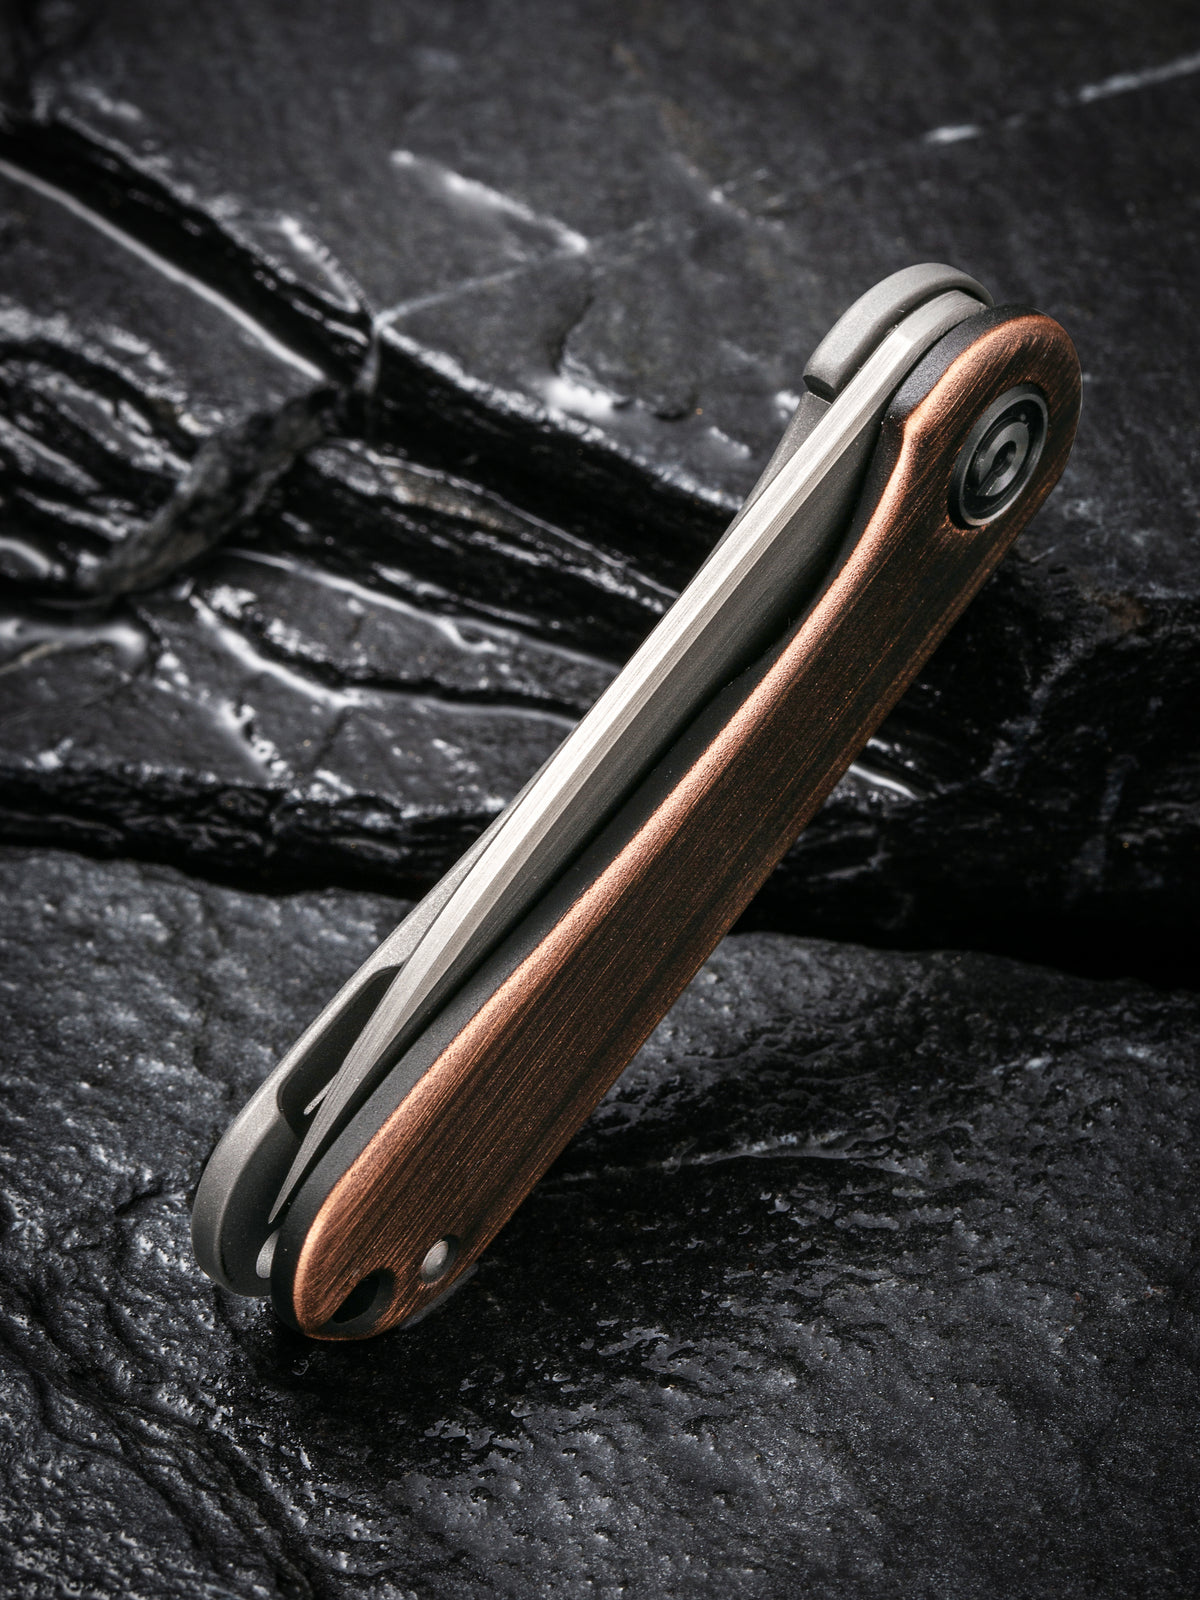 CIVIVI Mini Elementum | Black Hand Rubbed Copper Handle w/ Gray Hand Rubbed Steel Lock Side Handle Gray Hand Rubbed 14C28N Blade Frame Lock